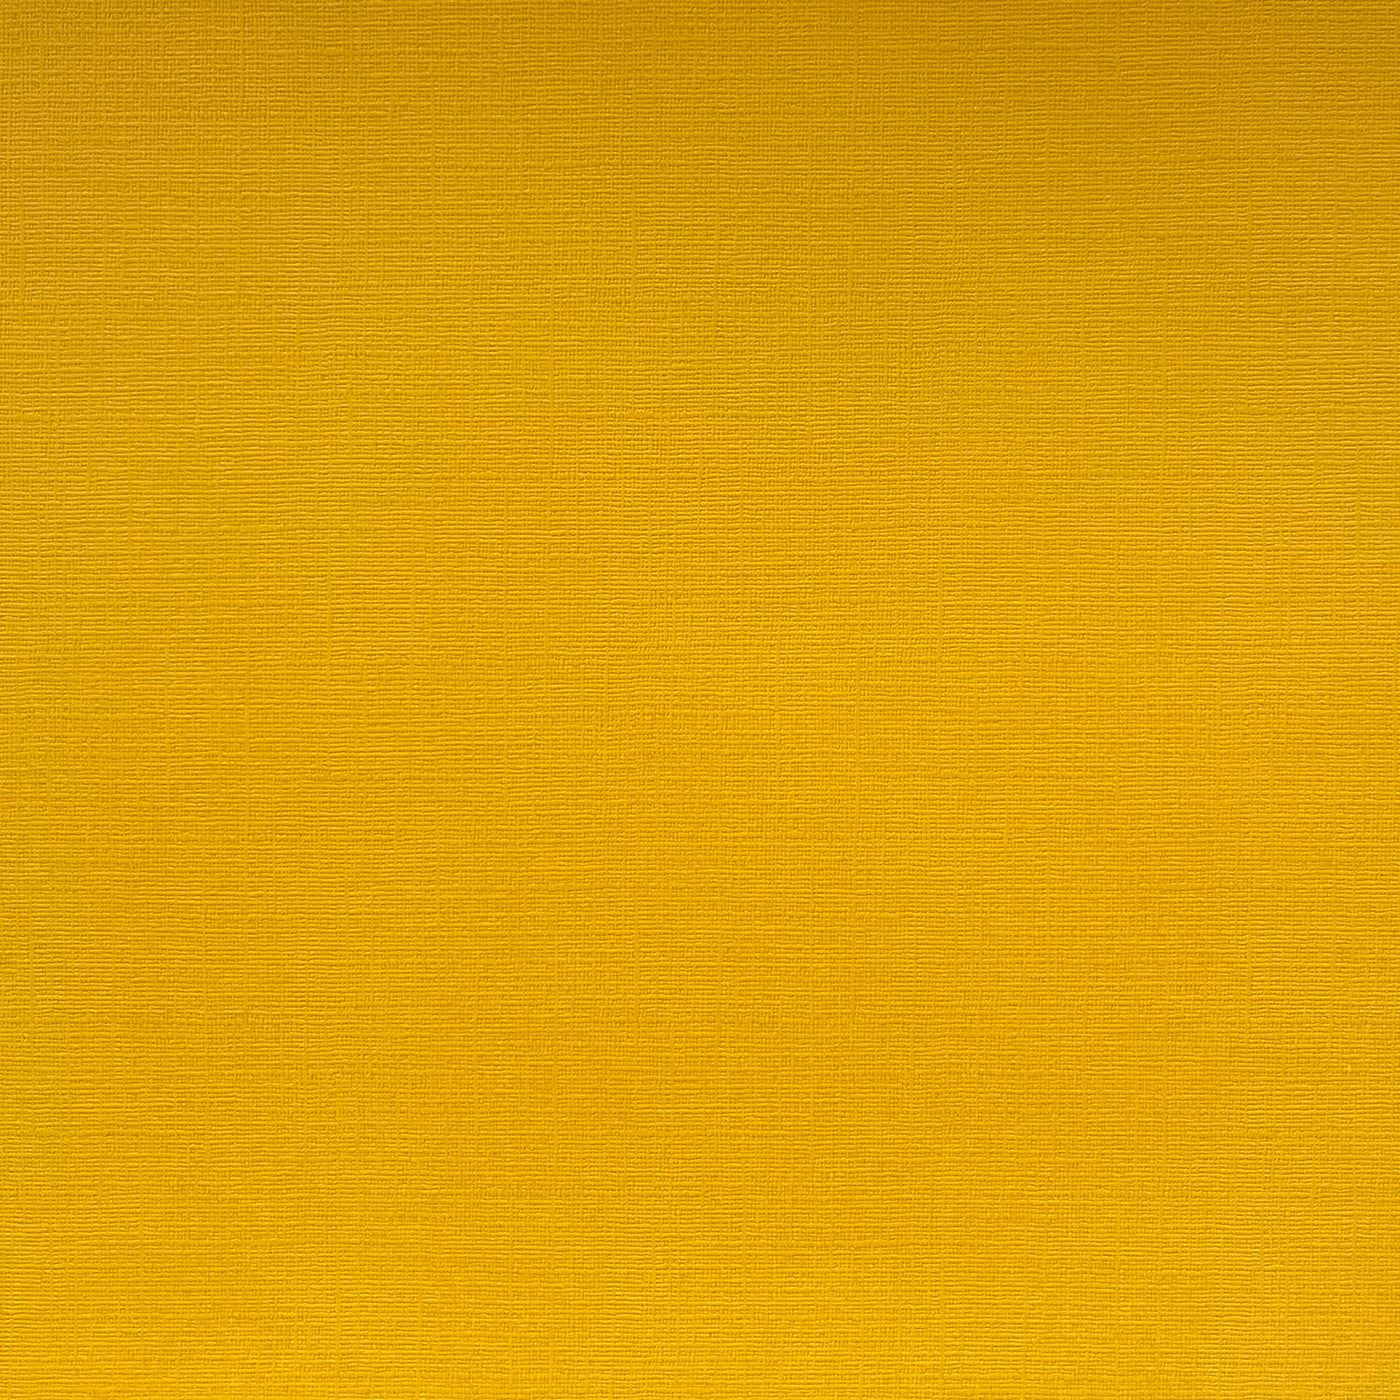 Harvest Orange - Textured 12x12 Cardstock - Golden yellow canvas scrapbook paper